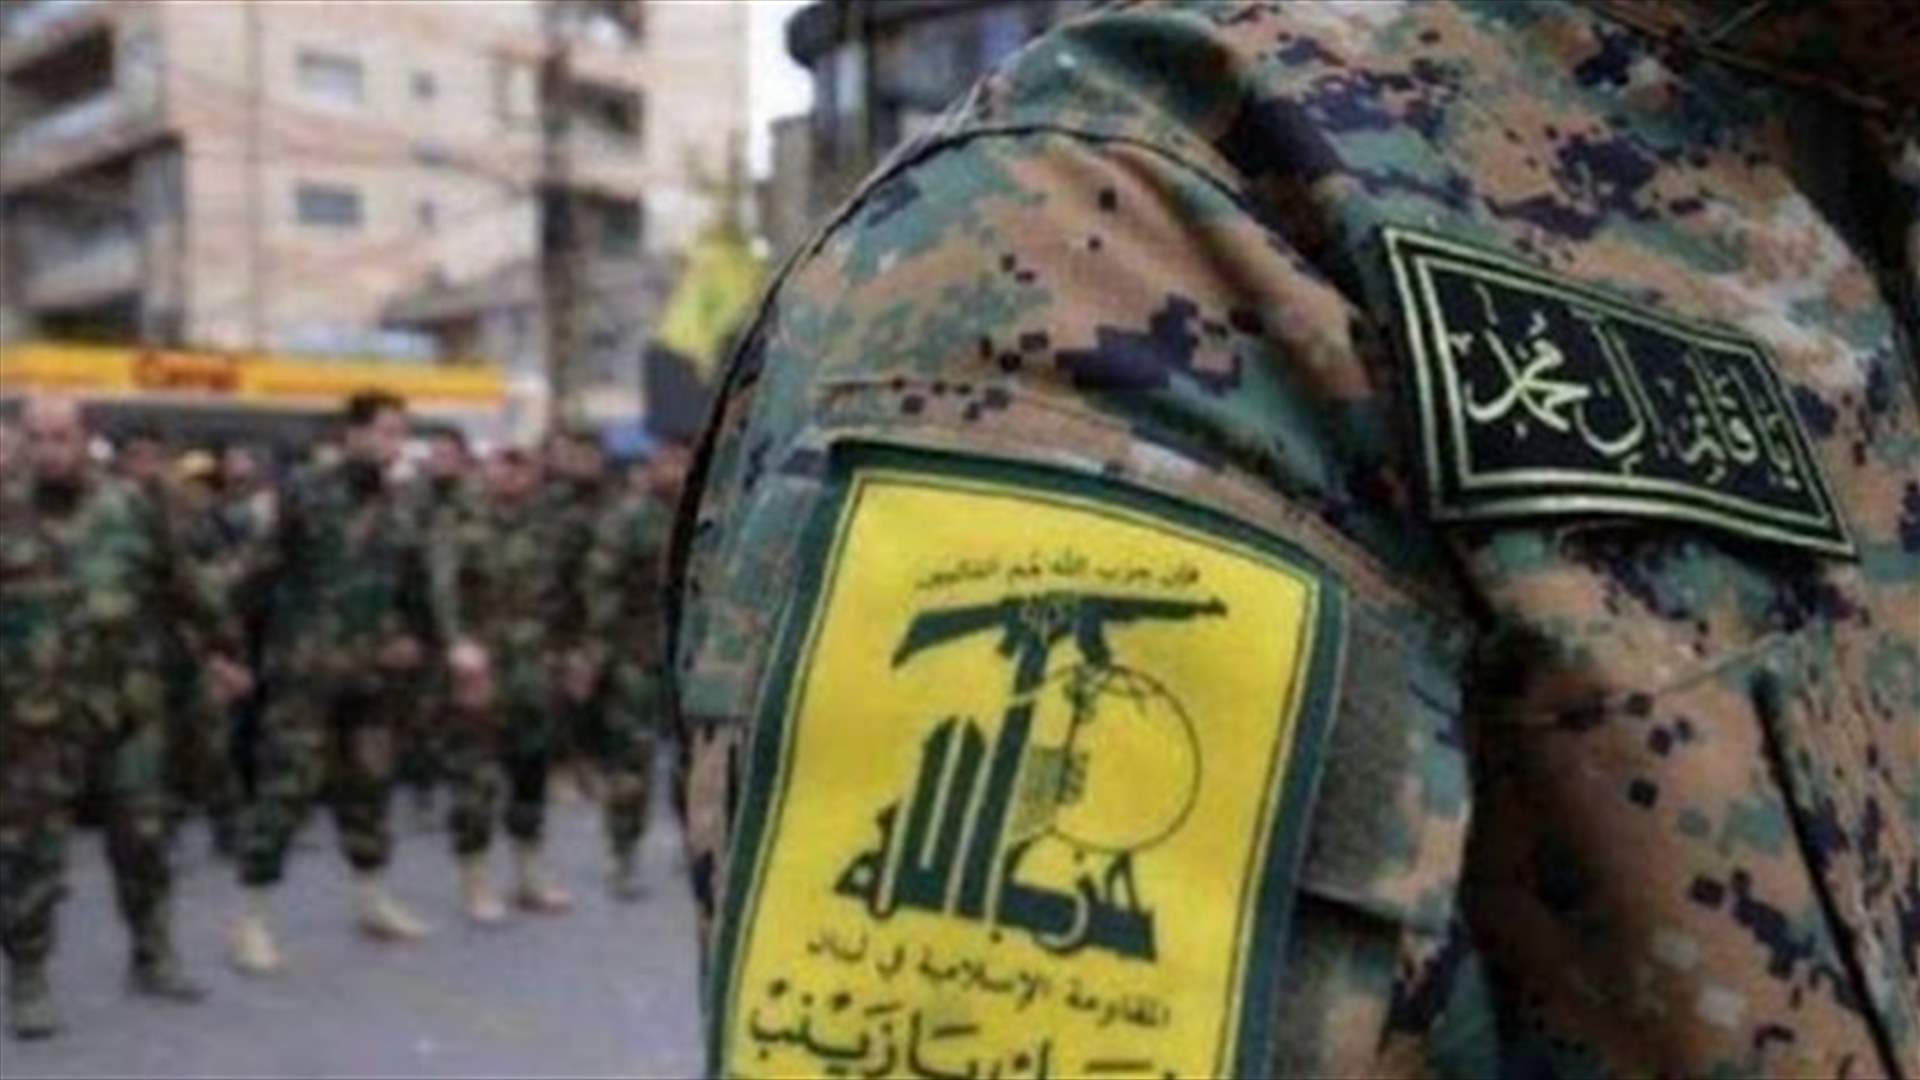 الأخبار: قرار الحفاظ على الحكومة أولوية عند حزب الله...